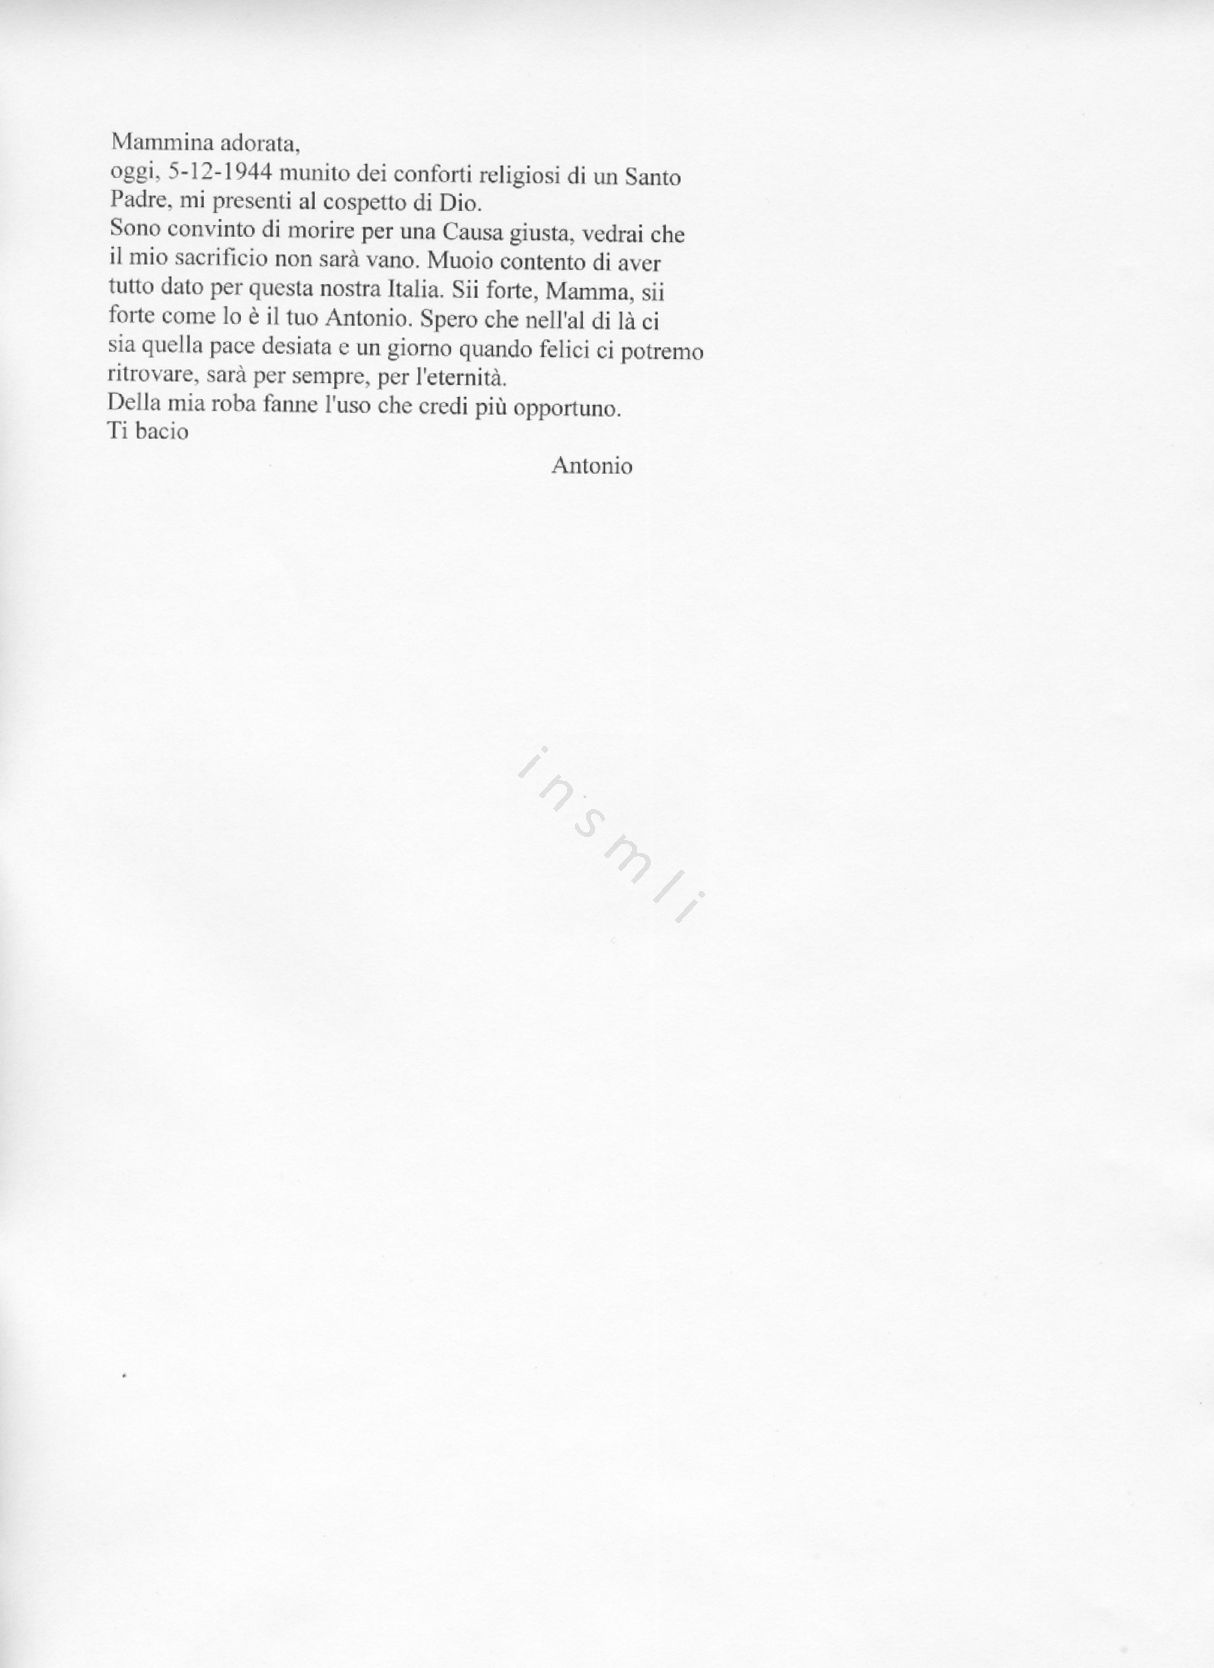 L’immagine riproduce la trascrizione dell’ultima lettera di Antonio Giuffrida alla madre, scritta il giorno stesso della sua esecuzione.